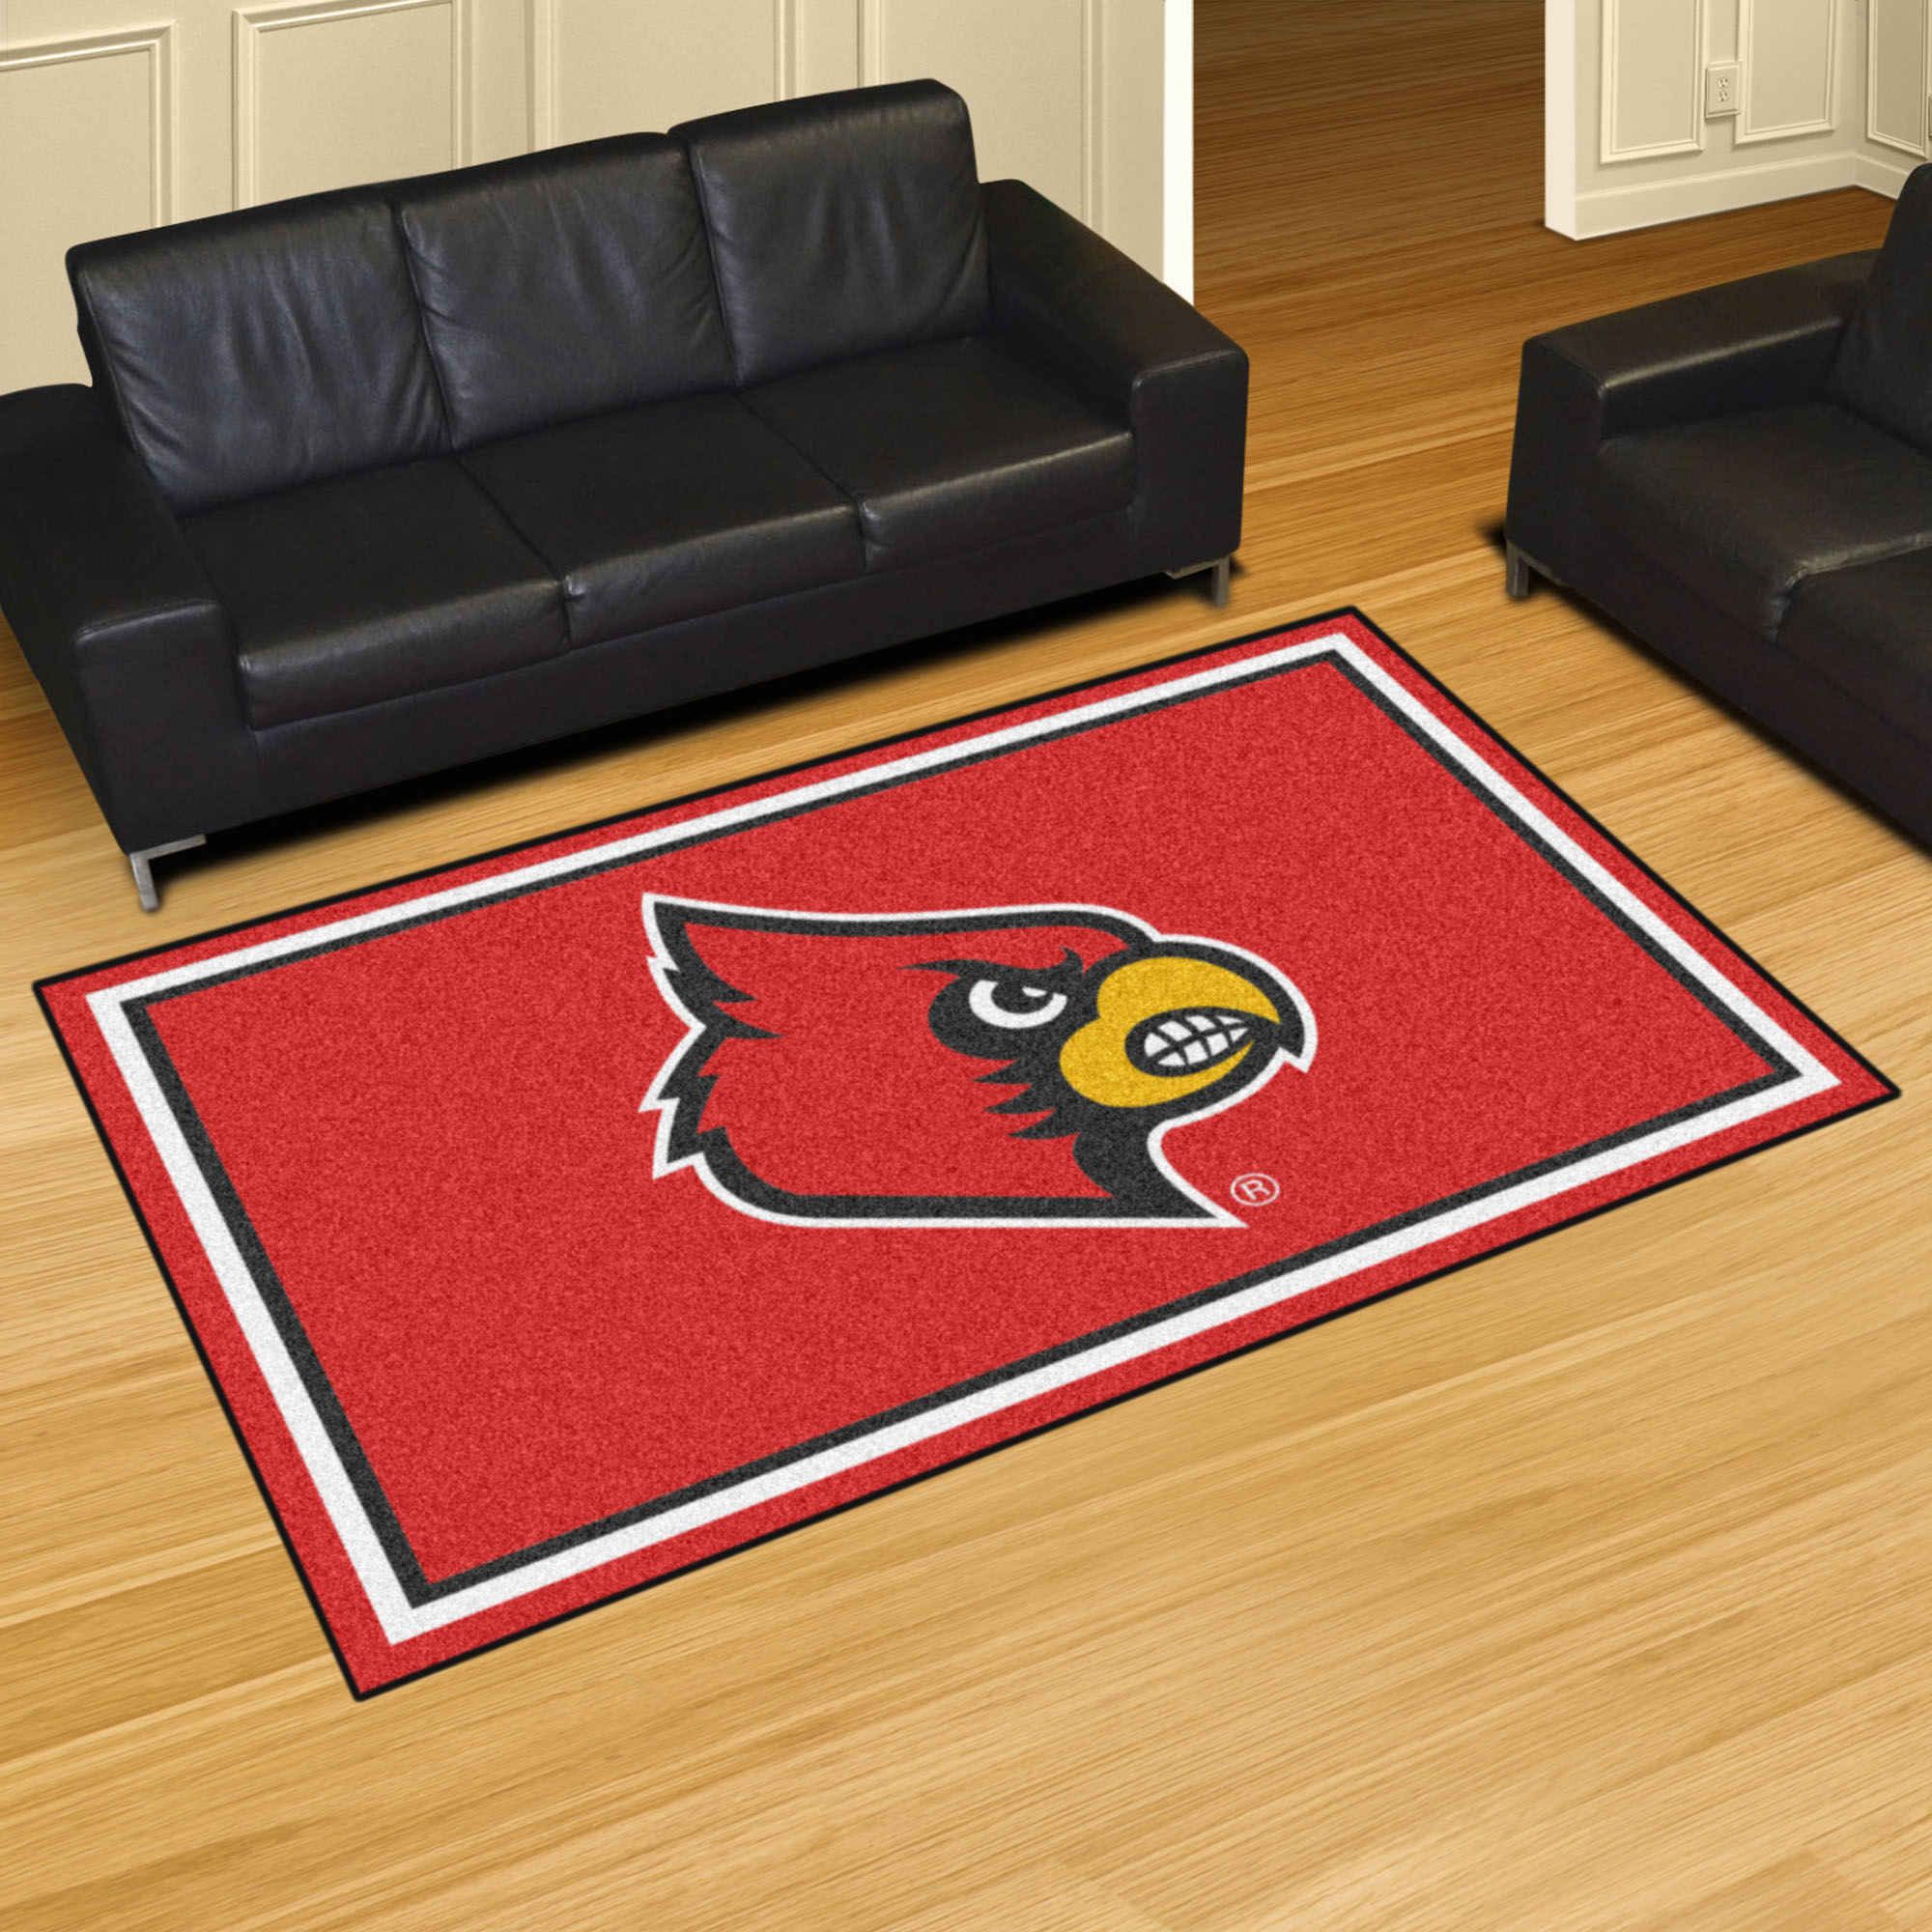 University of Louisville Cardinals Area Rug â€“ 5 x 8